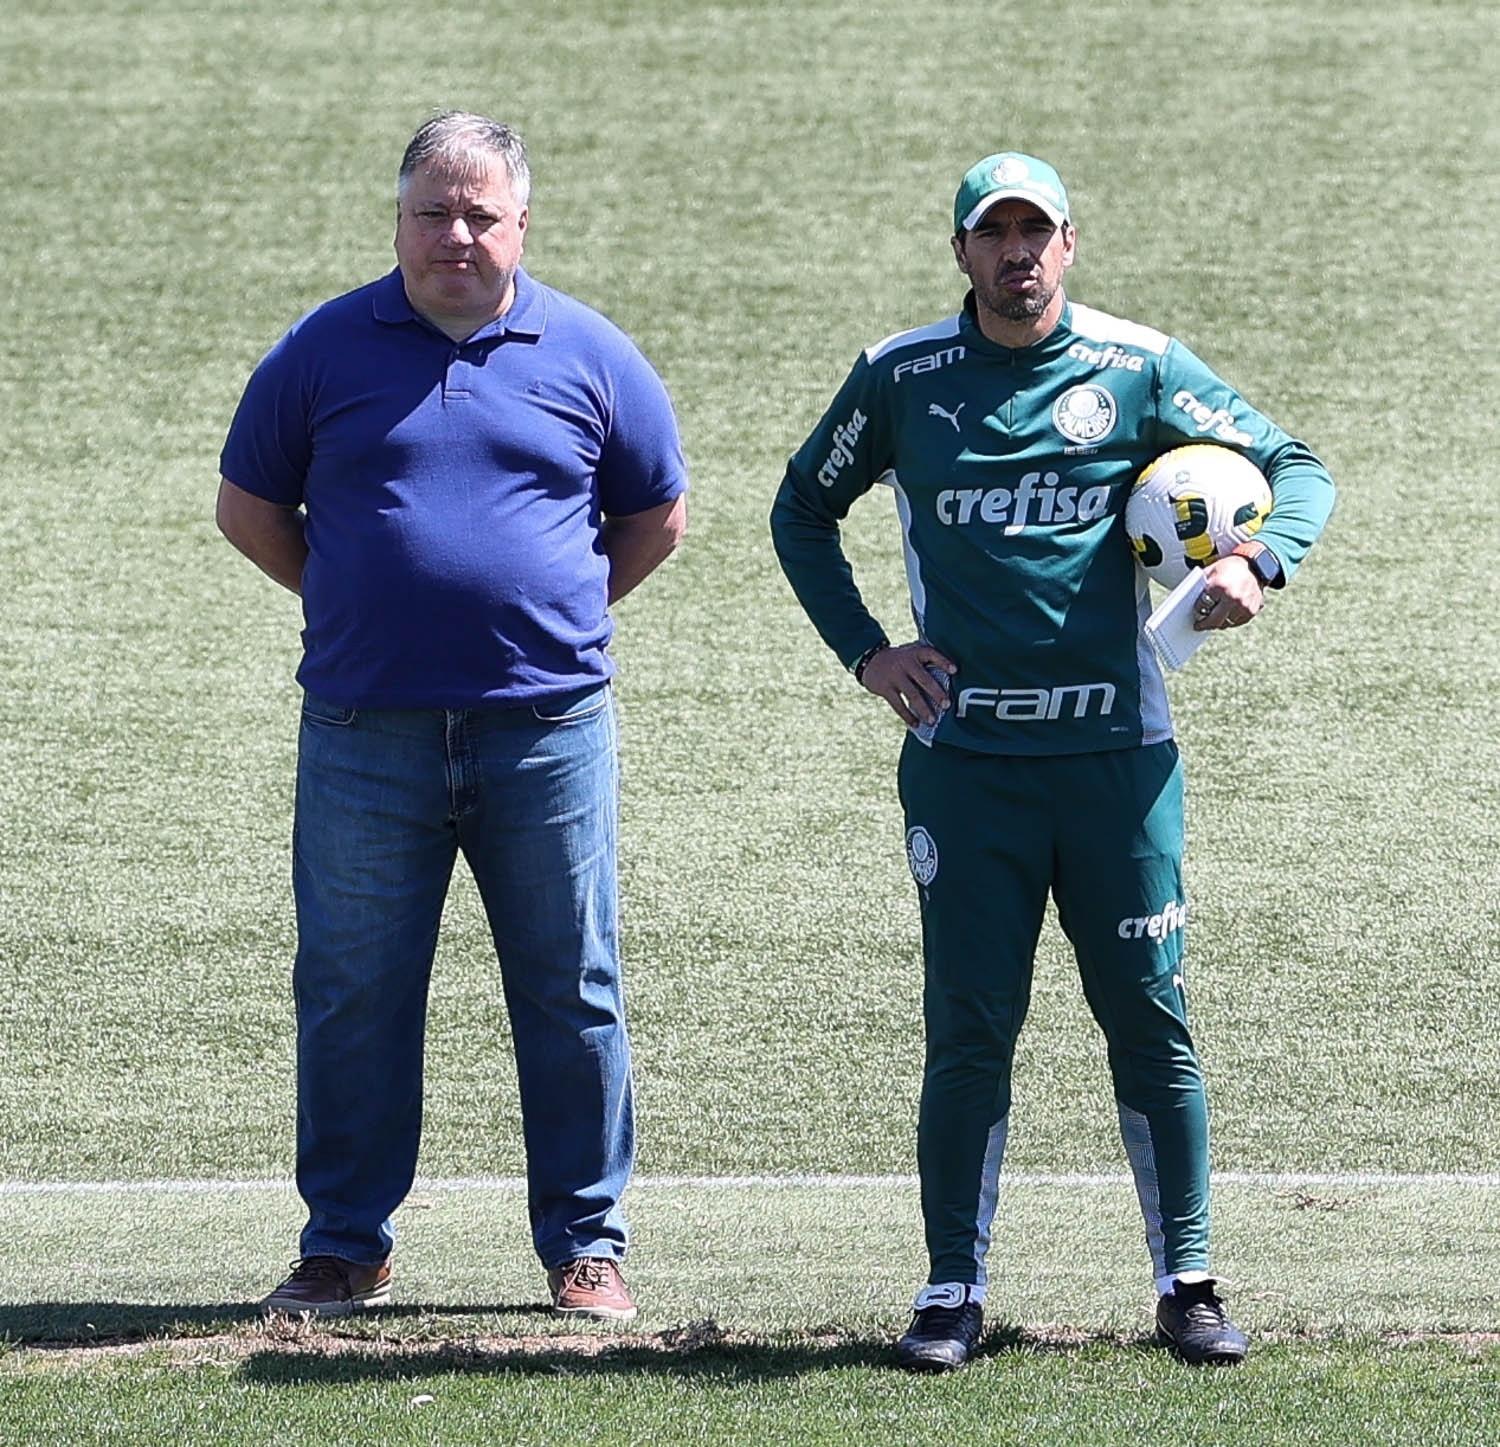 Grupo City mira atacante do Palmeiras para reforçar o Bahia, diz